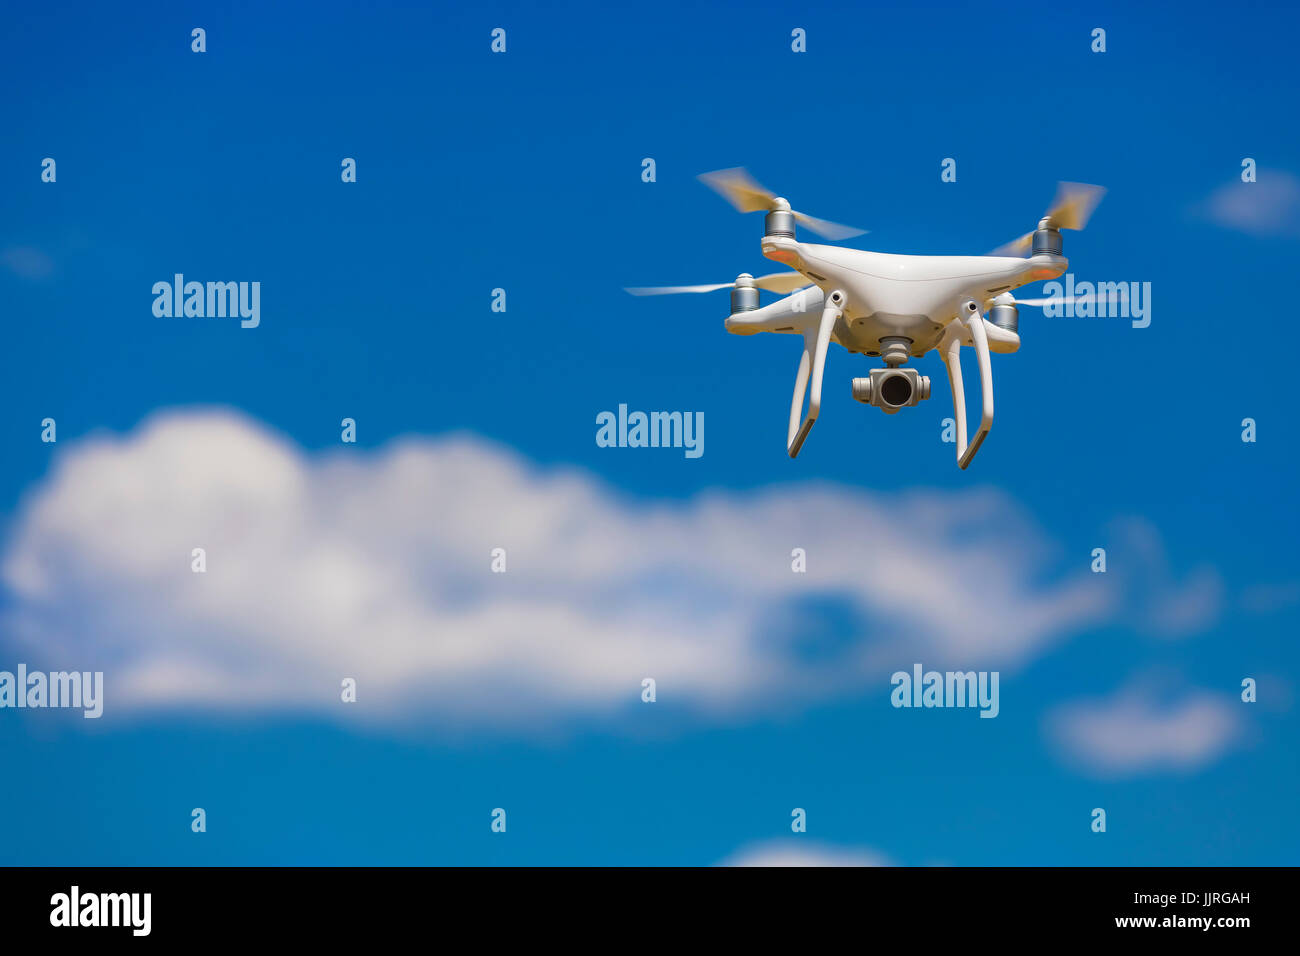 Telecamera professionale drone volare nel cielo blu chiaro parzialmente nuvoloso Foto Stock